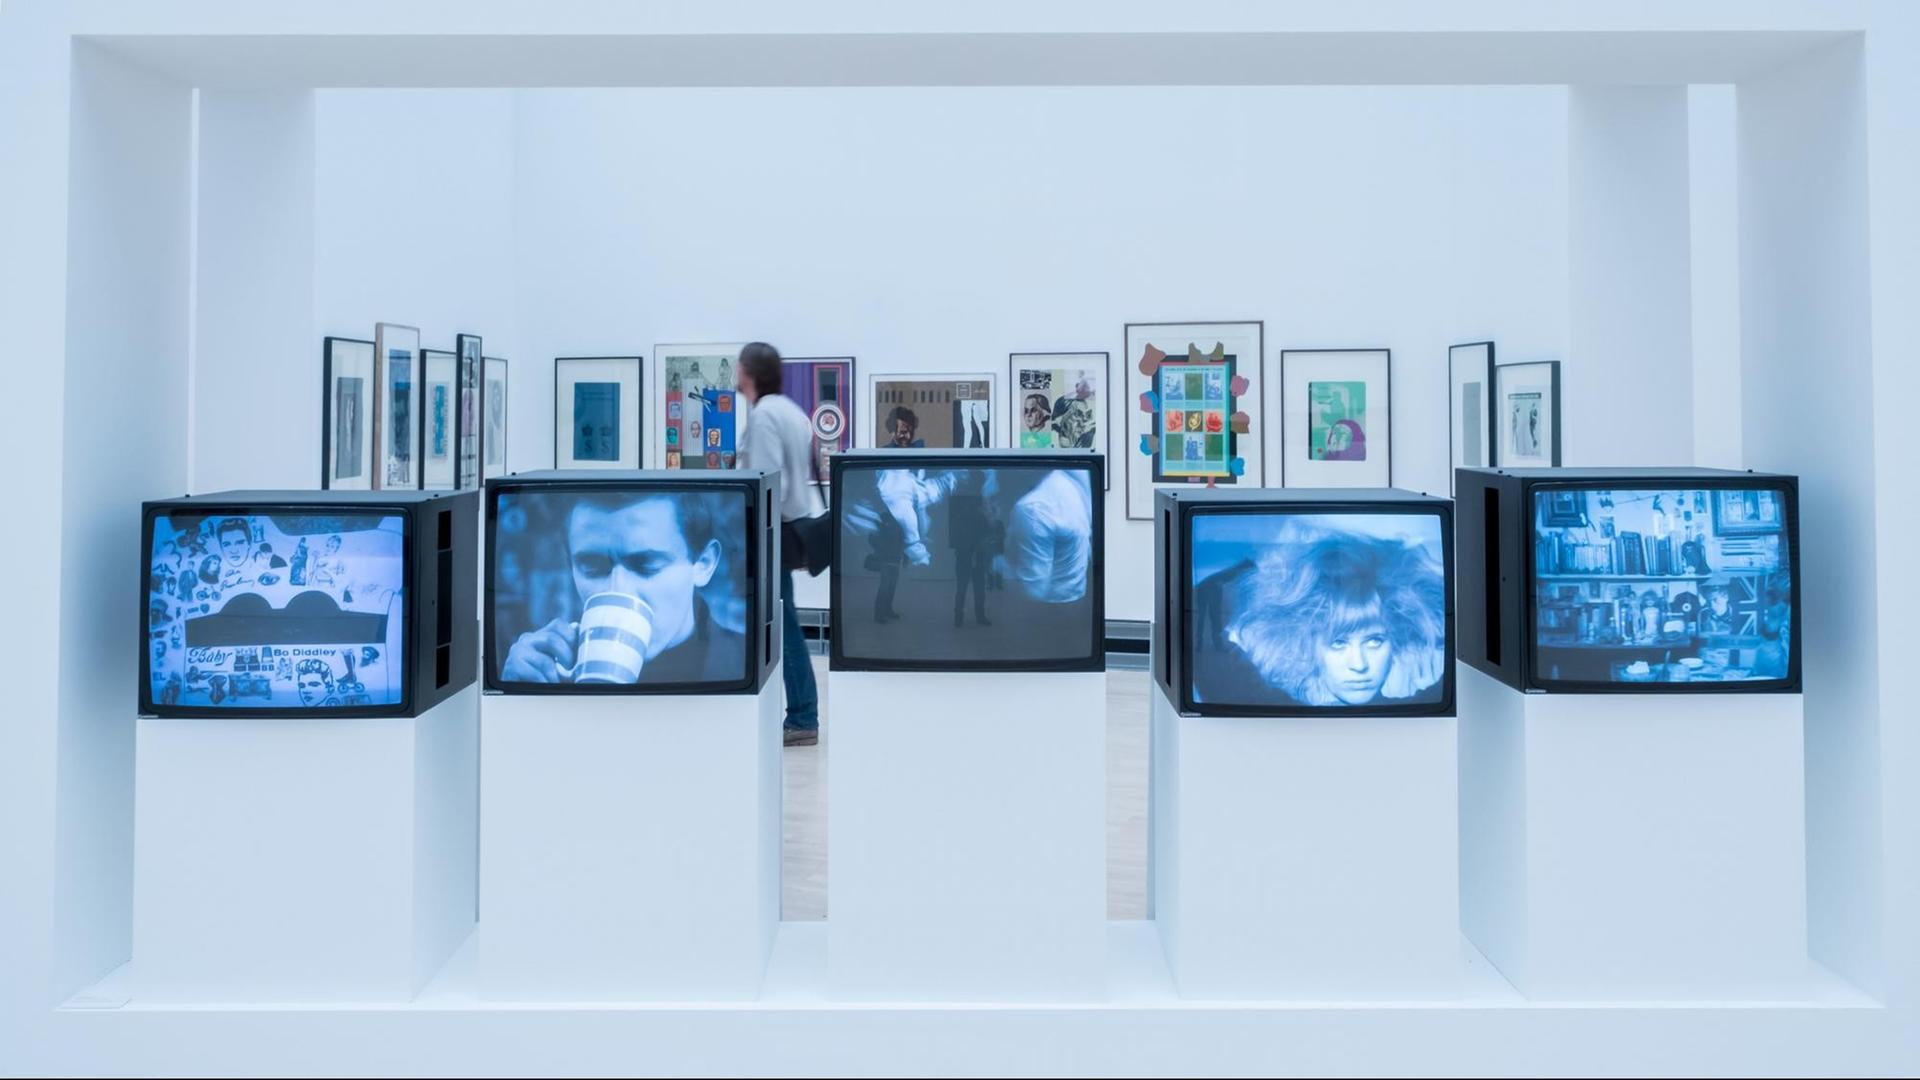 Der erste Pop Art Film "Pop goes the easel" von Ken Russel ist am 27.10.2016 als Teil der Ausstellung -This was tomorrow im Kunstmuseum in Wolfsburg (Niedersachsen) zu sehen. Die Ausstellung ist vom 30. Oktober bis 19. Februar zu sehen.